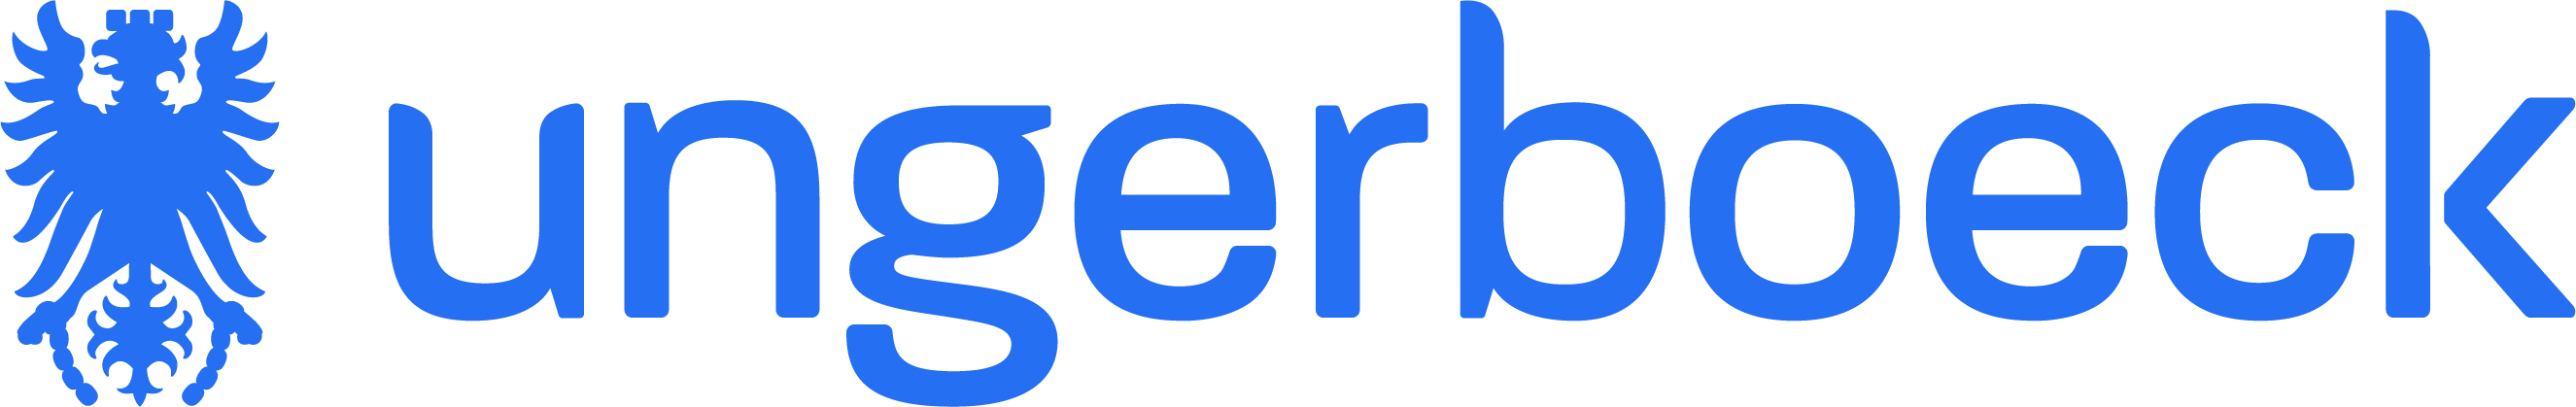 Ungerboeck logo